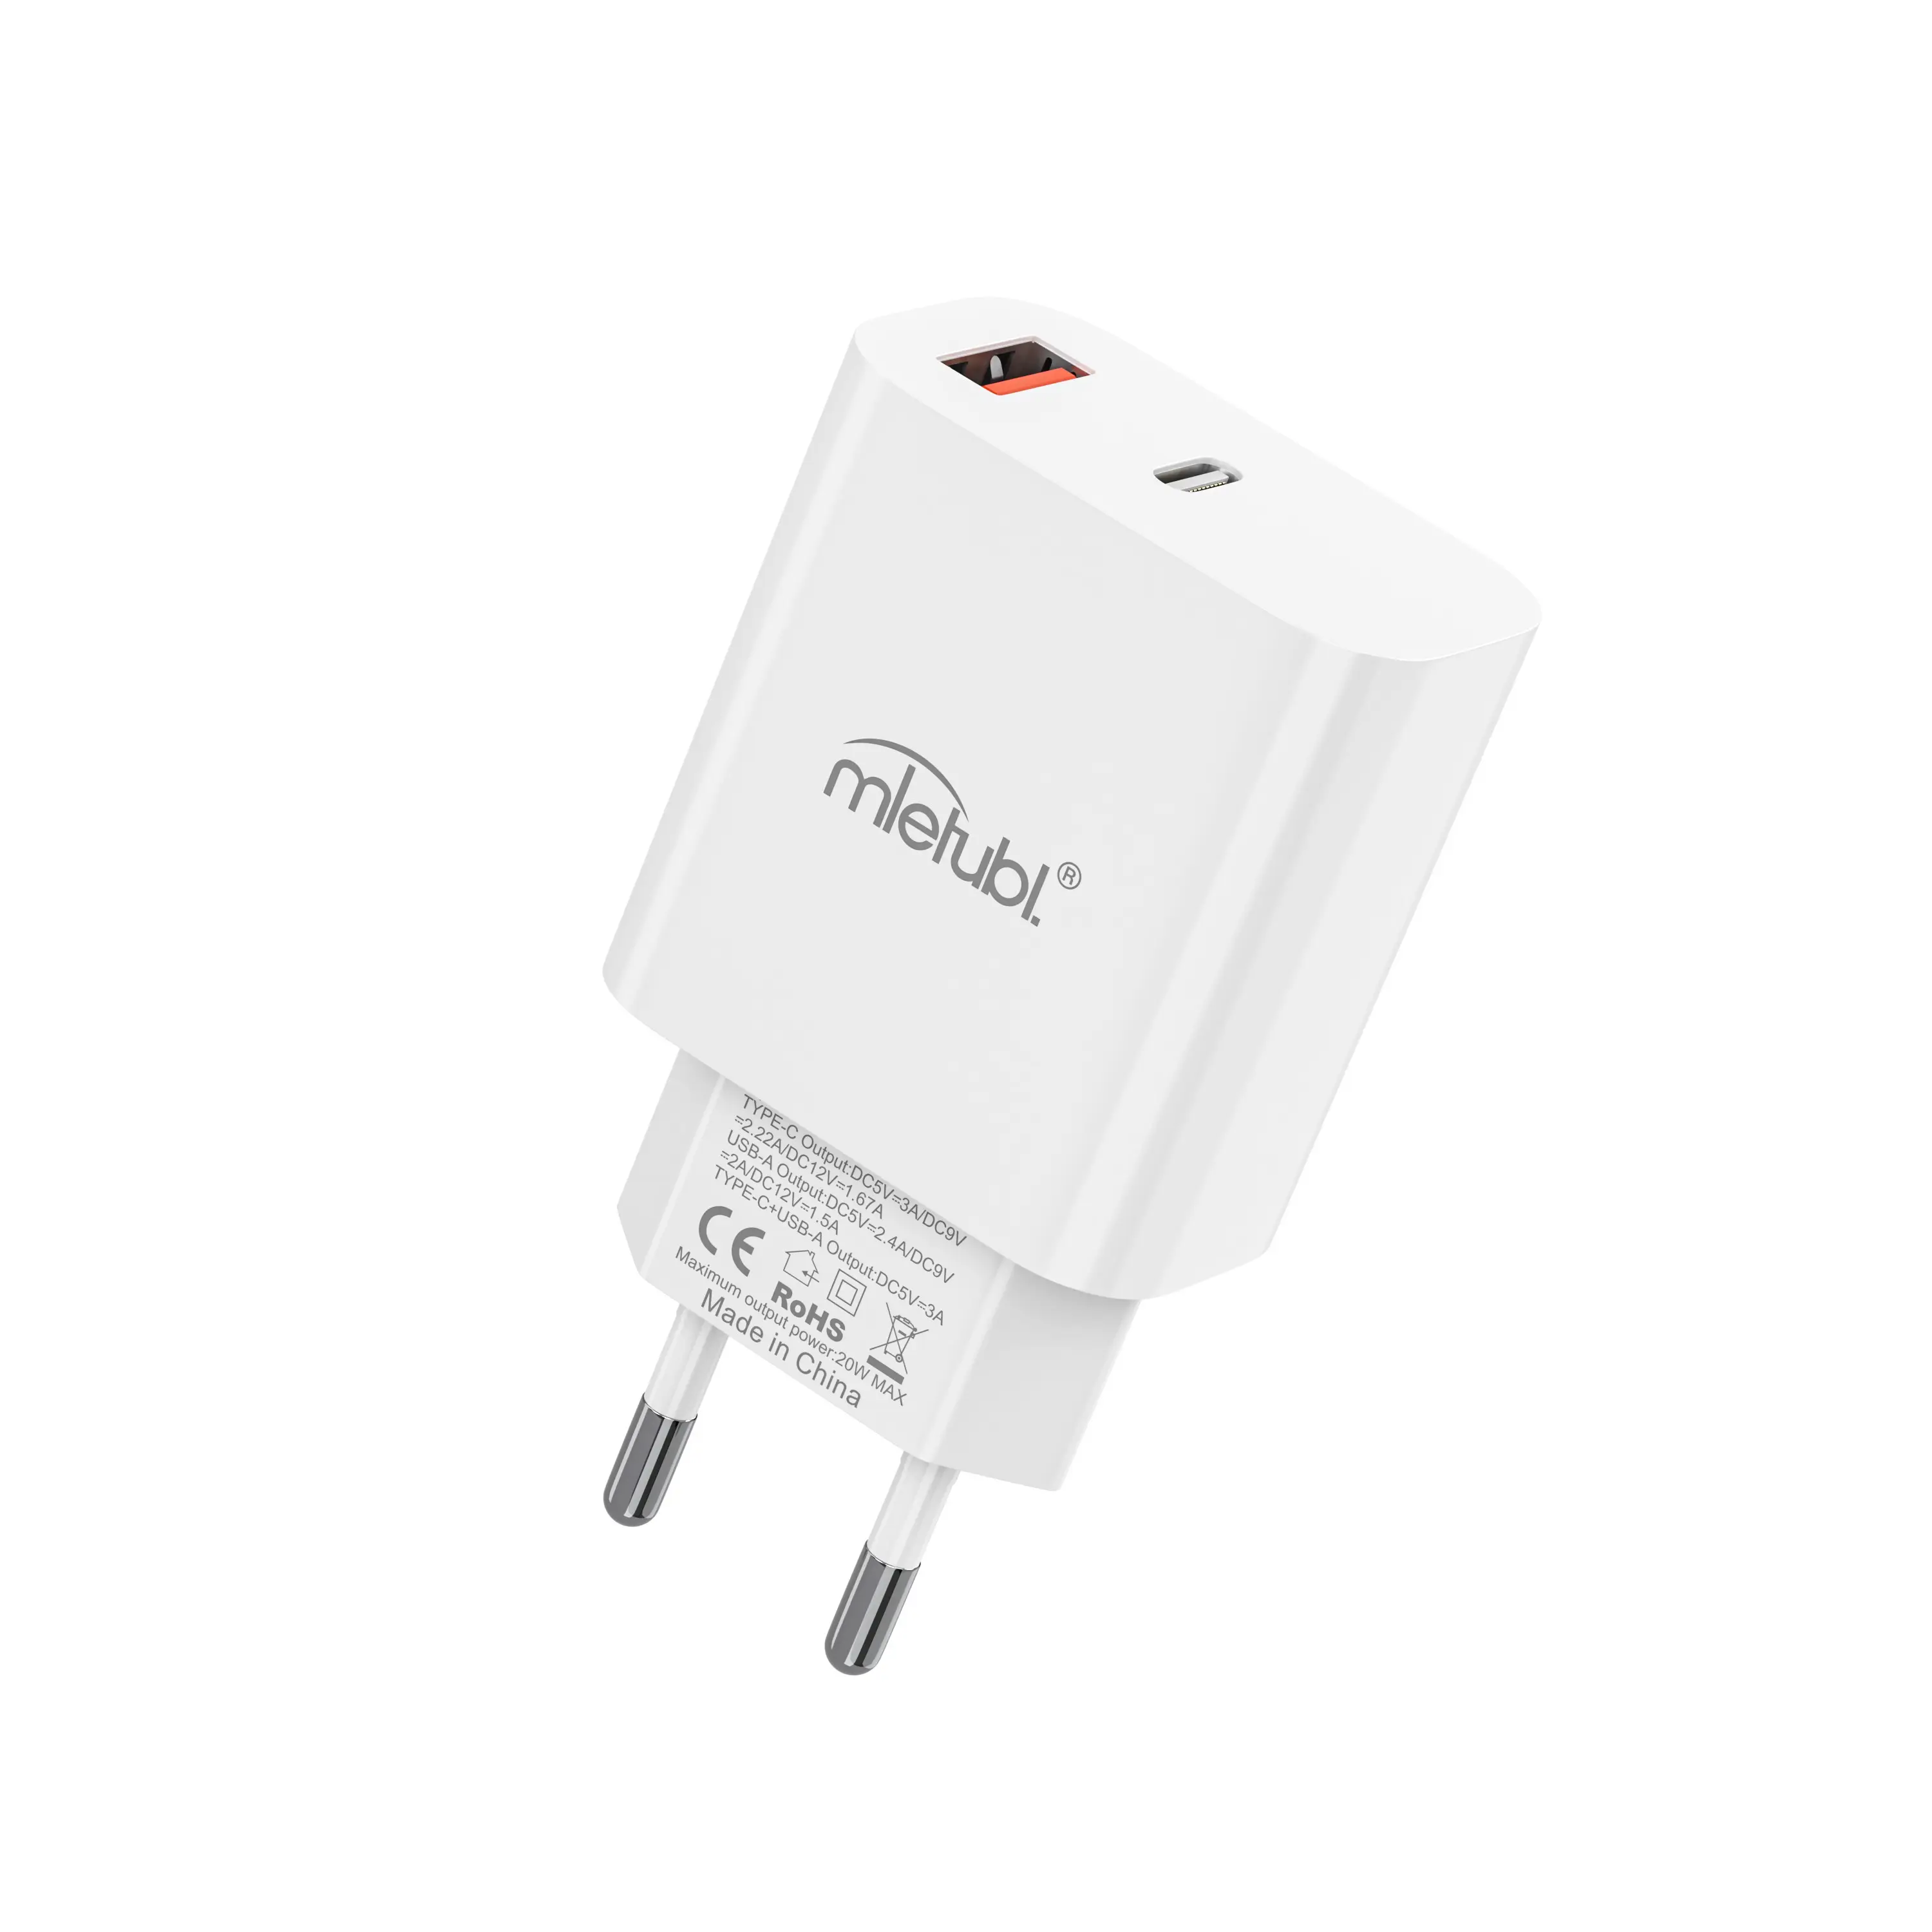 Chargeur rapide USB Mietubl 3.0 Type-C chargeur mural rapide PD20W QC adaptateur de chargeur USB à charge rapide